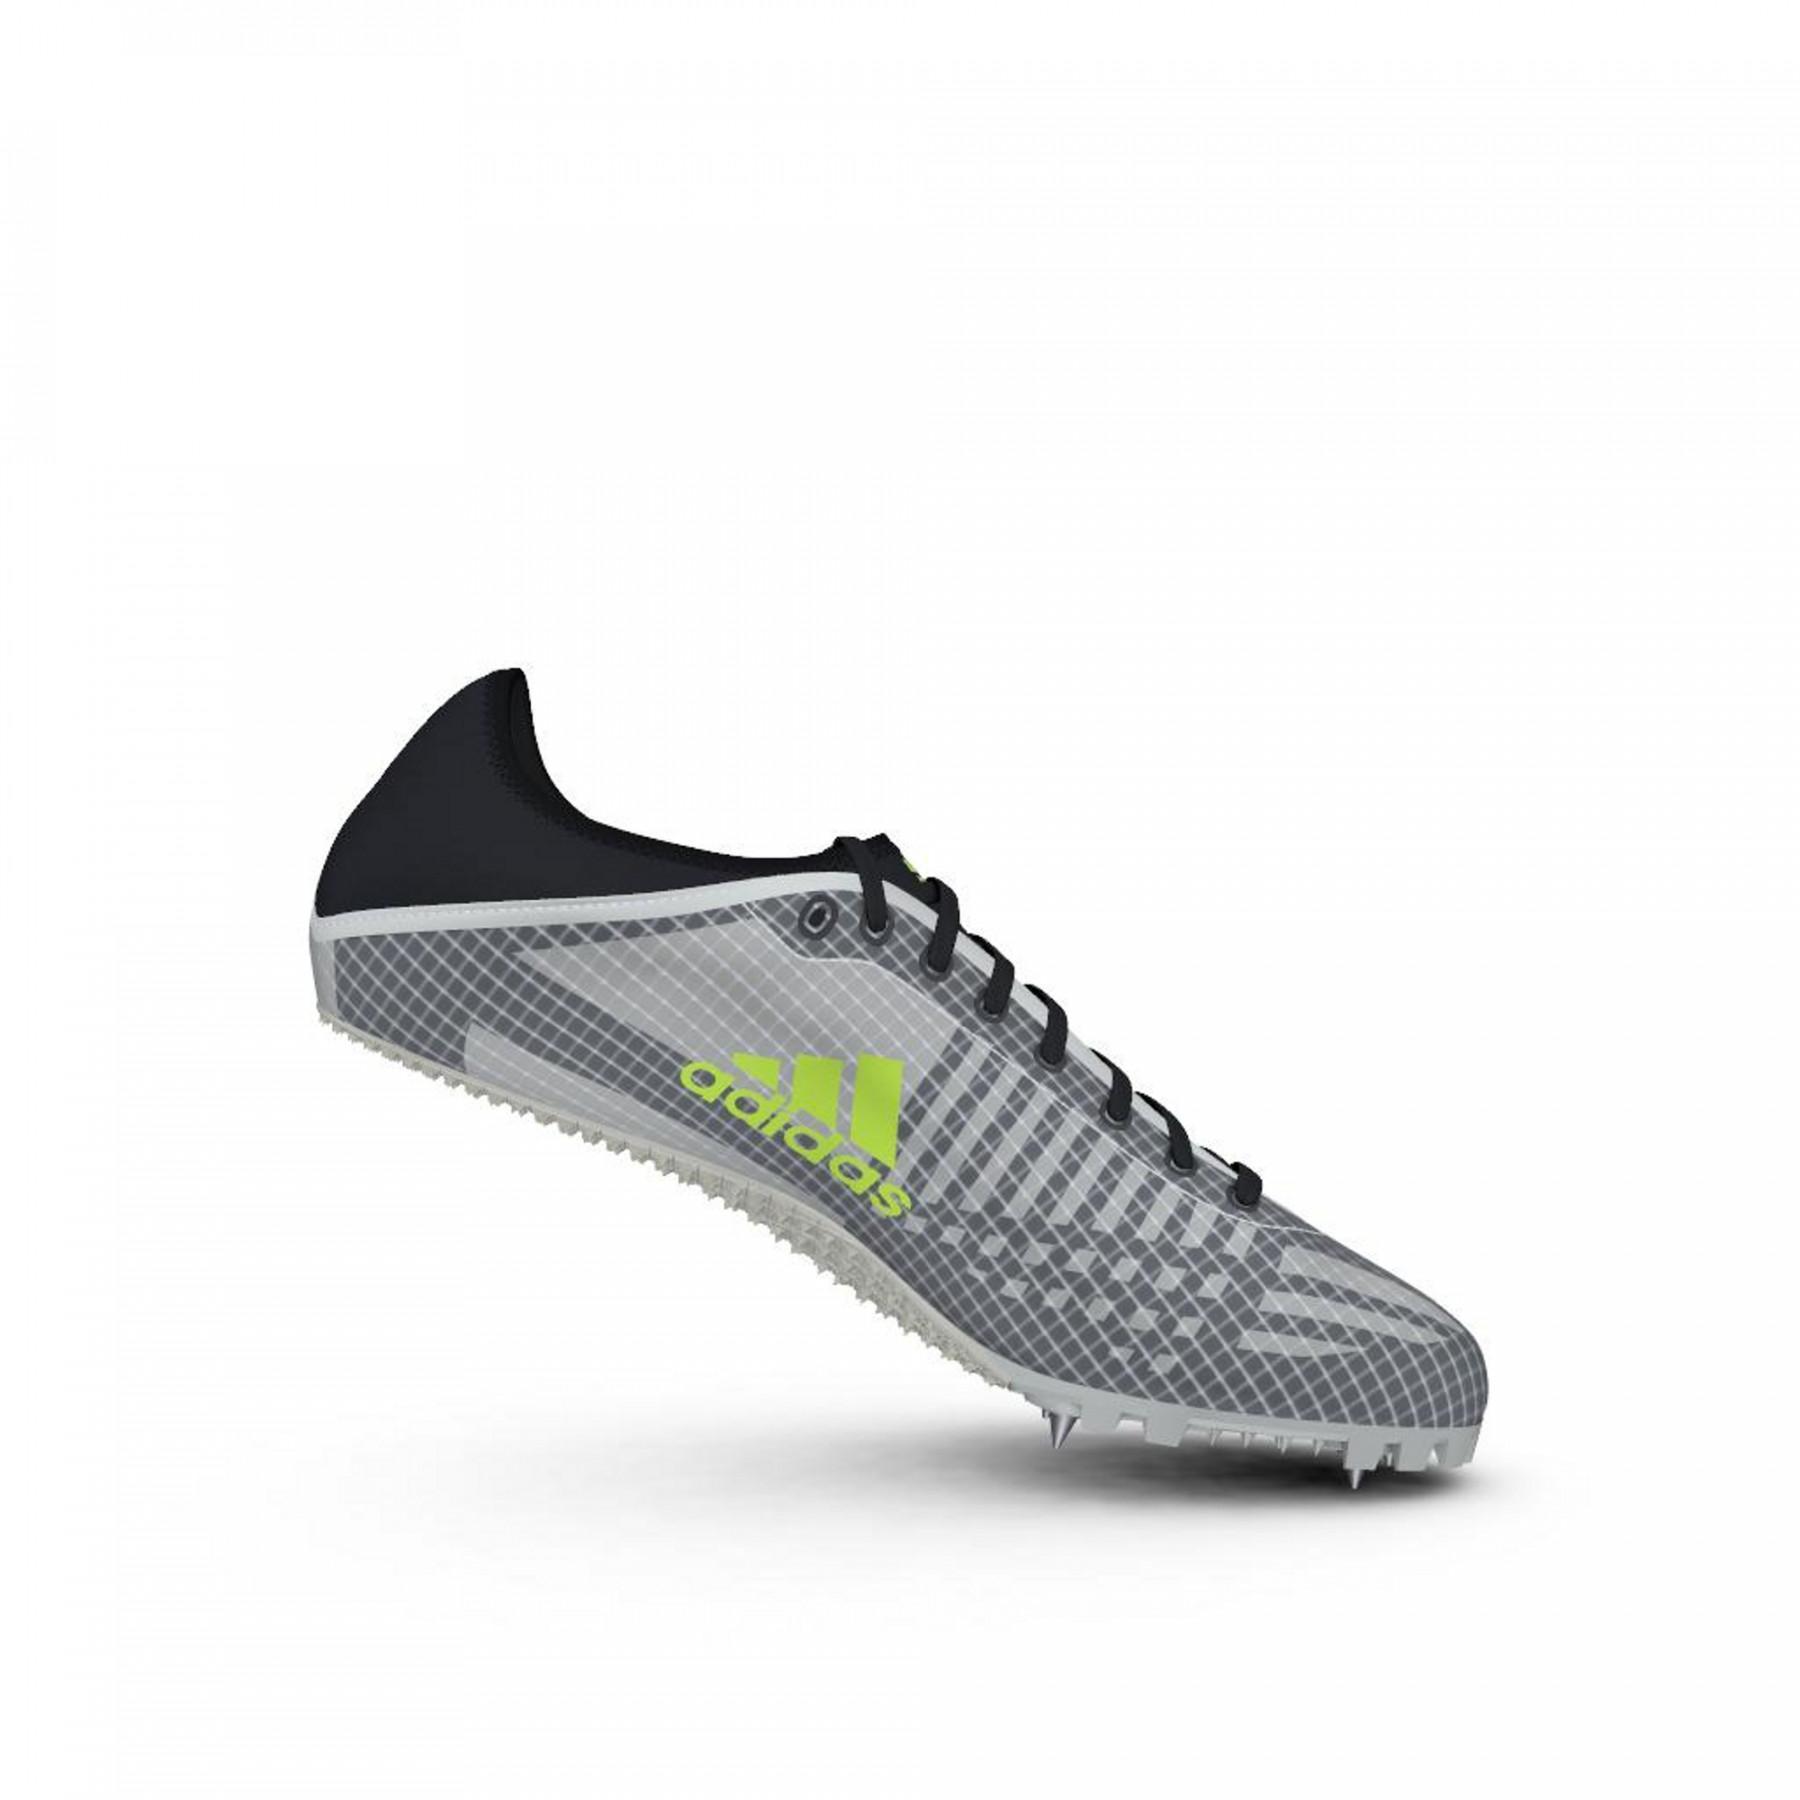 Chaussures adidas Sprintstar Spikes